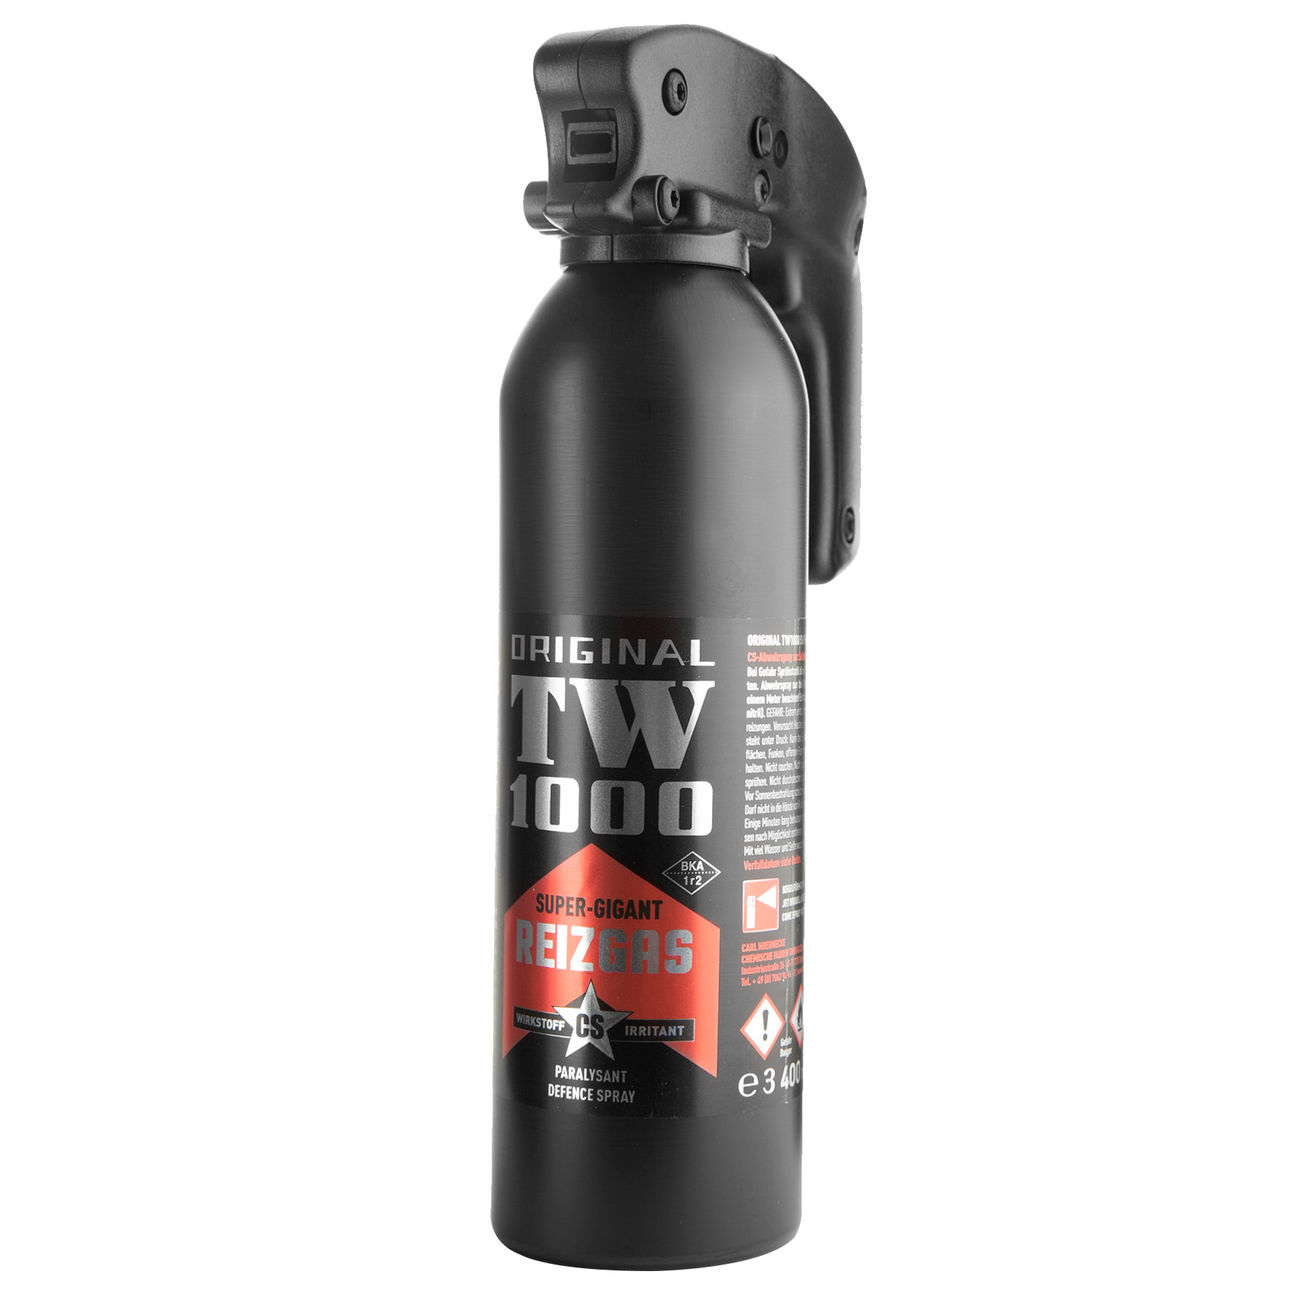 Abwehrspray TW1000 CS-Gas Spray Super-Gigant, 400ml kaufen